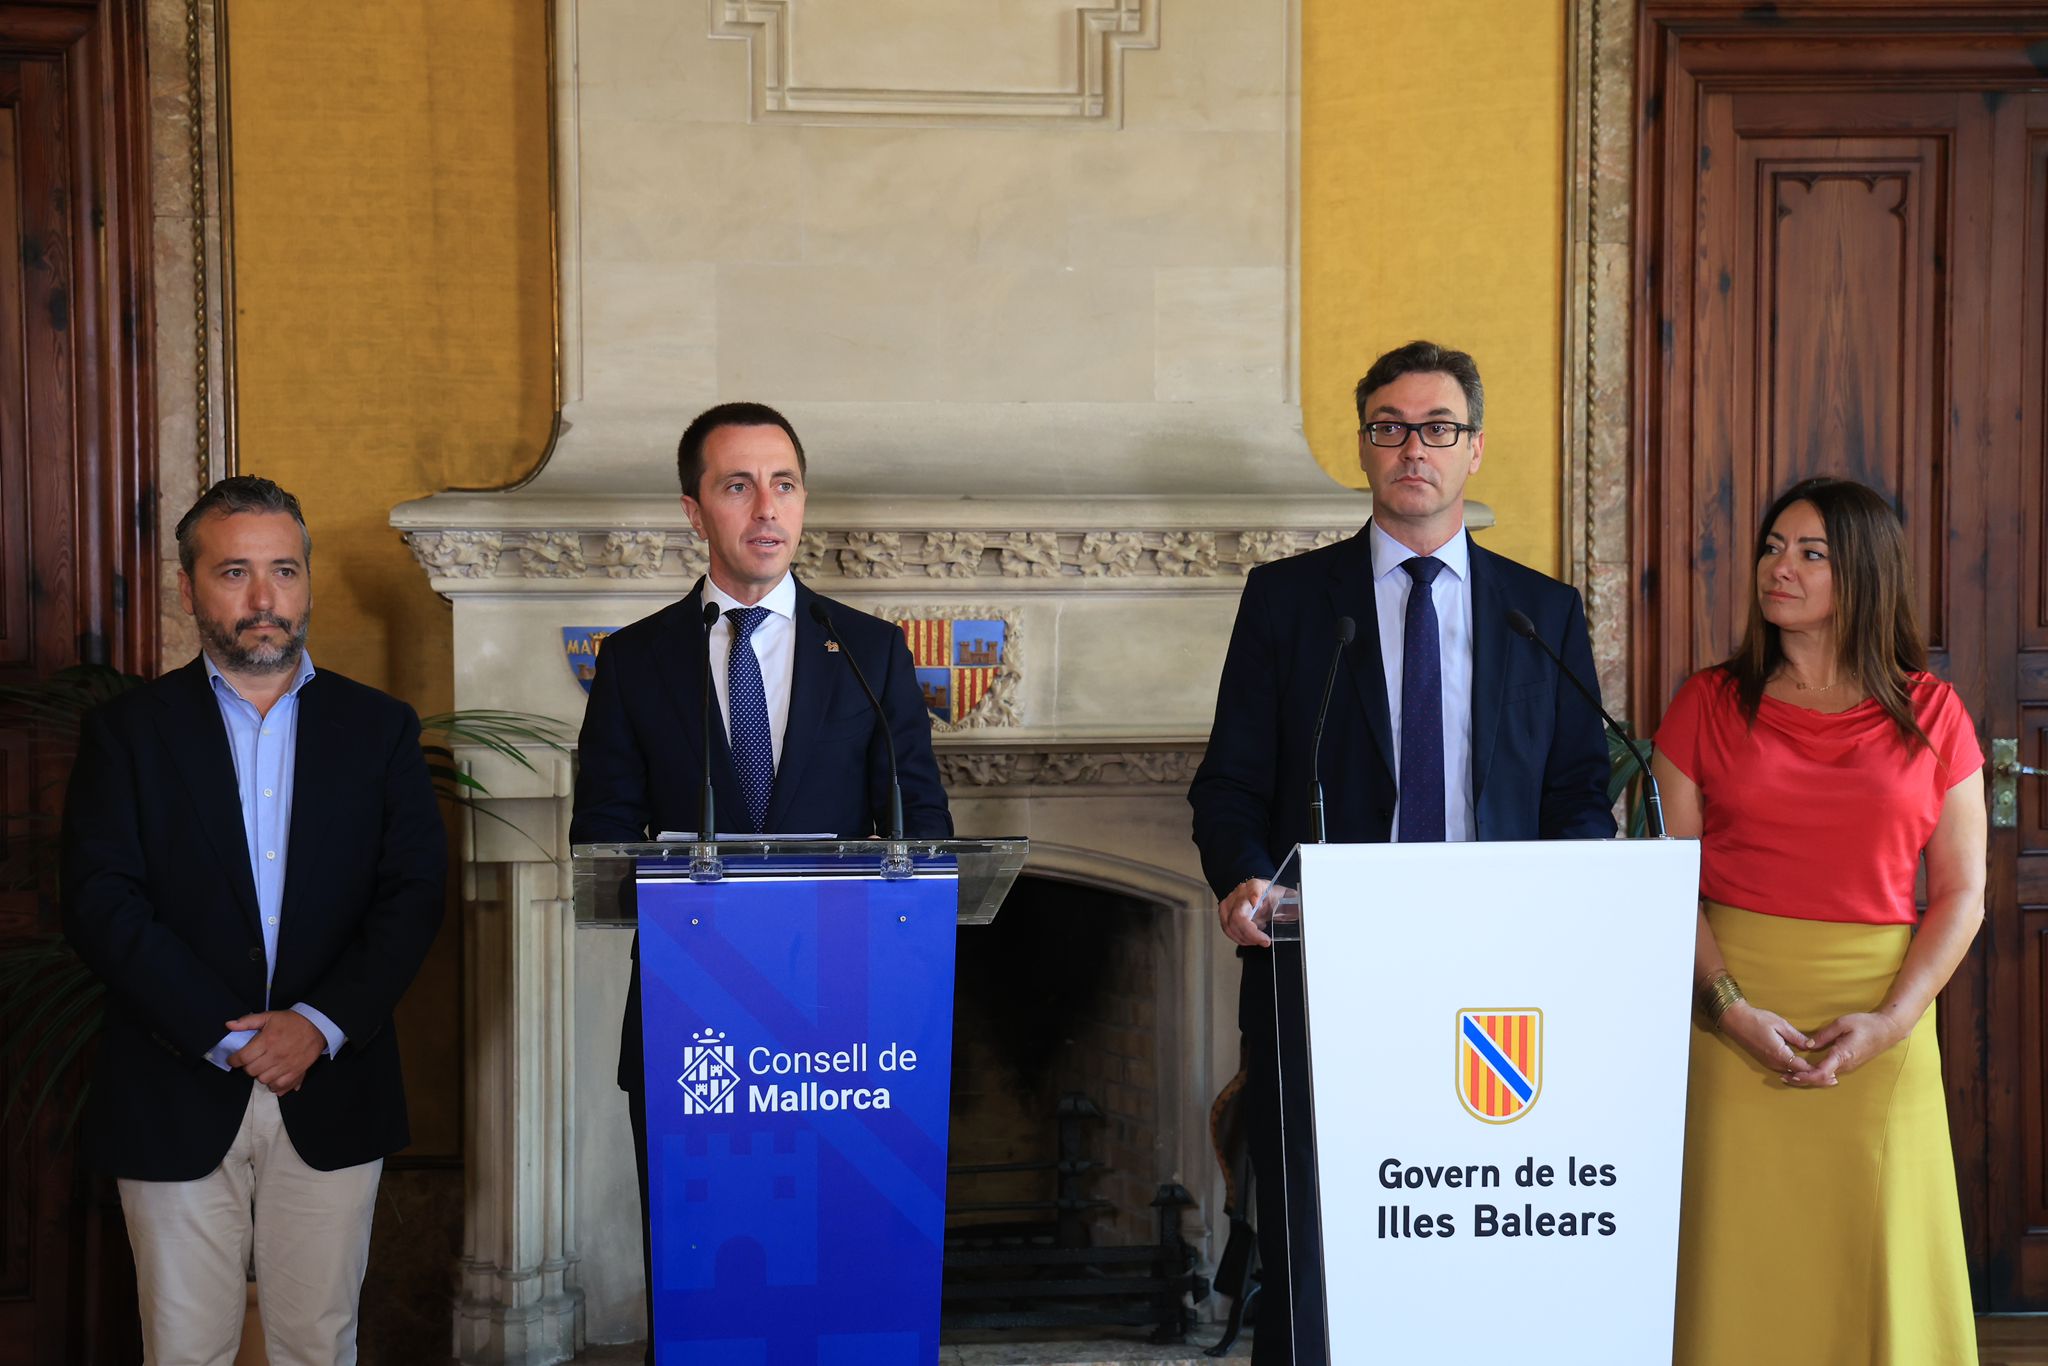 Reunió entre el president del Consell de Mallorca, Llorenç Galmés, i el vicepresident i conseller d’Hisenda del Govern de les Illes Balears, Antoni Costa.